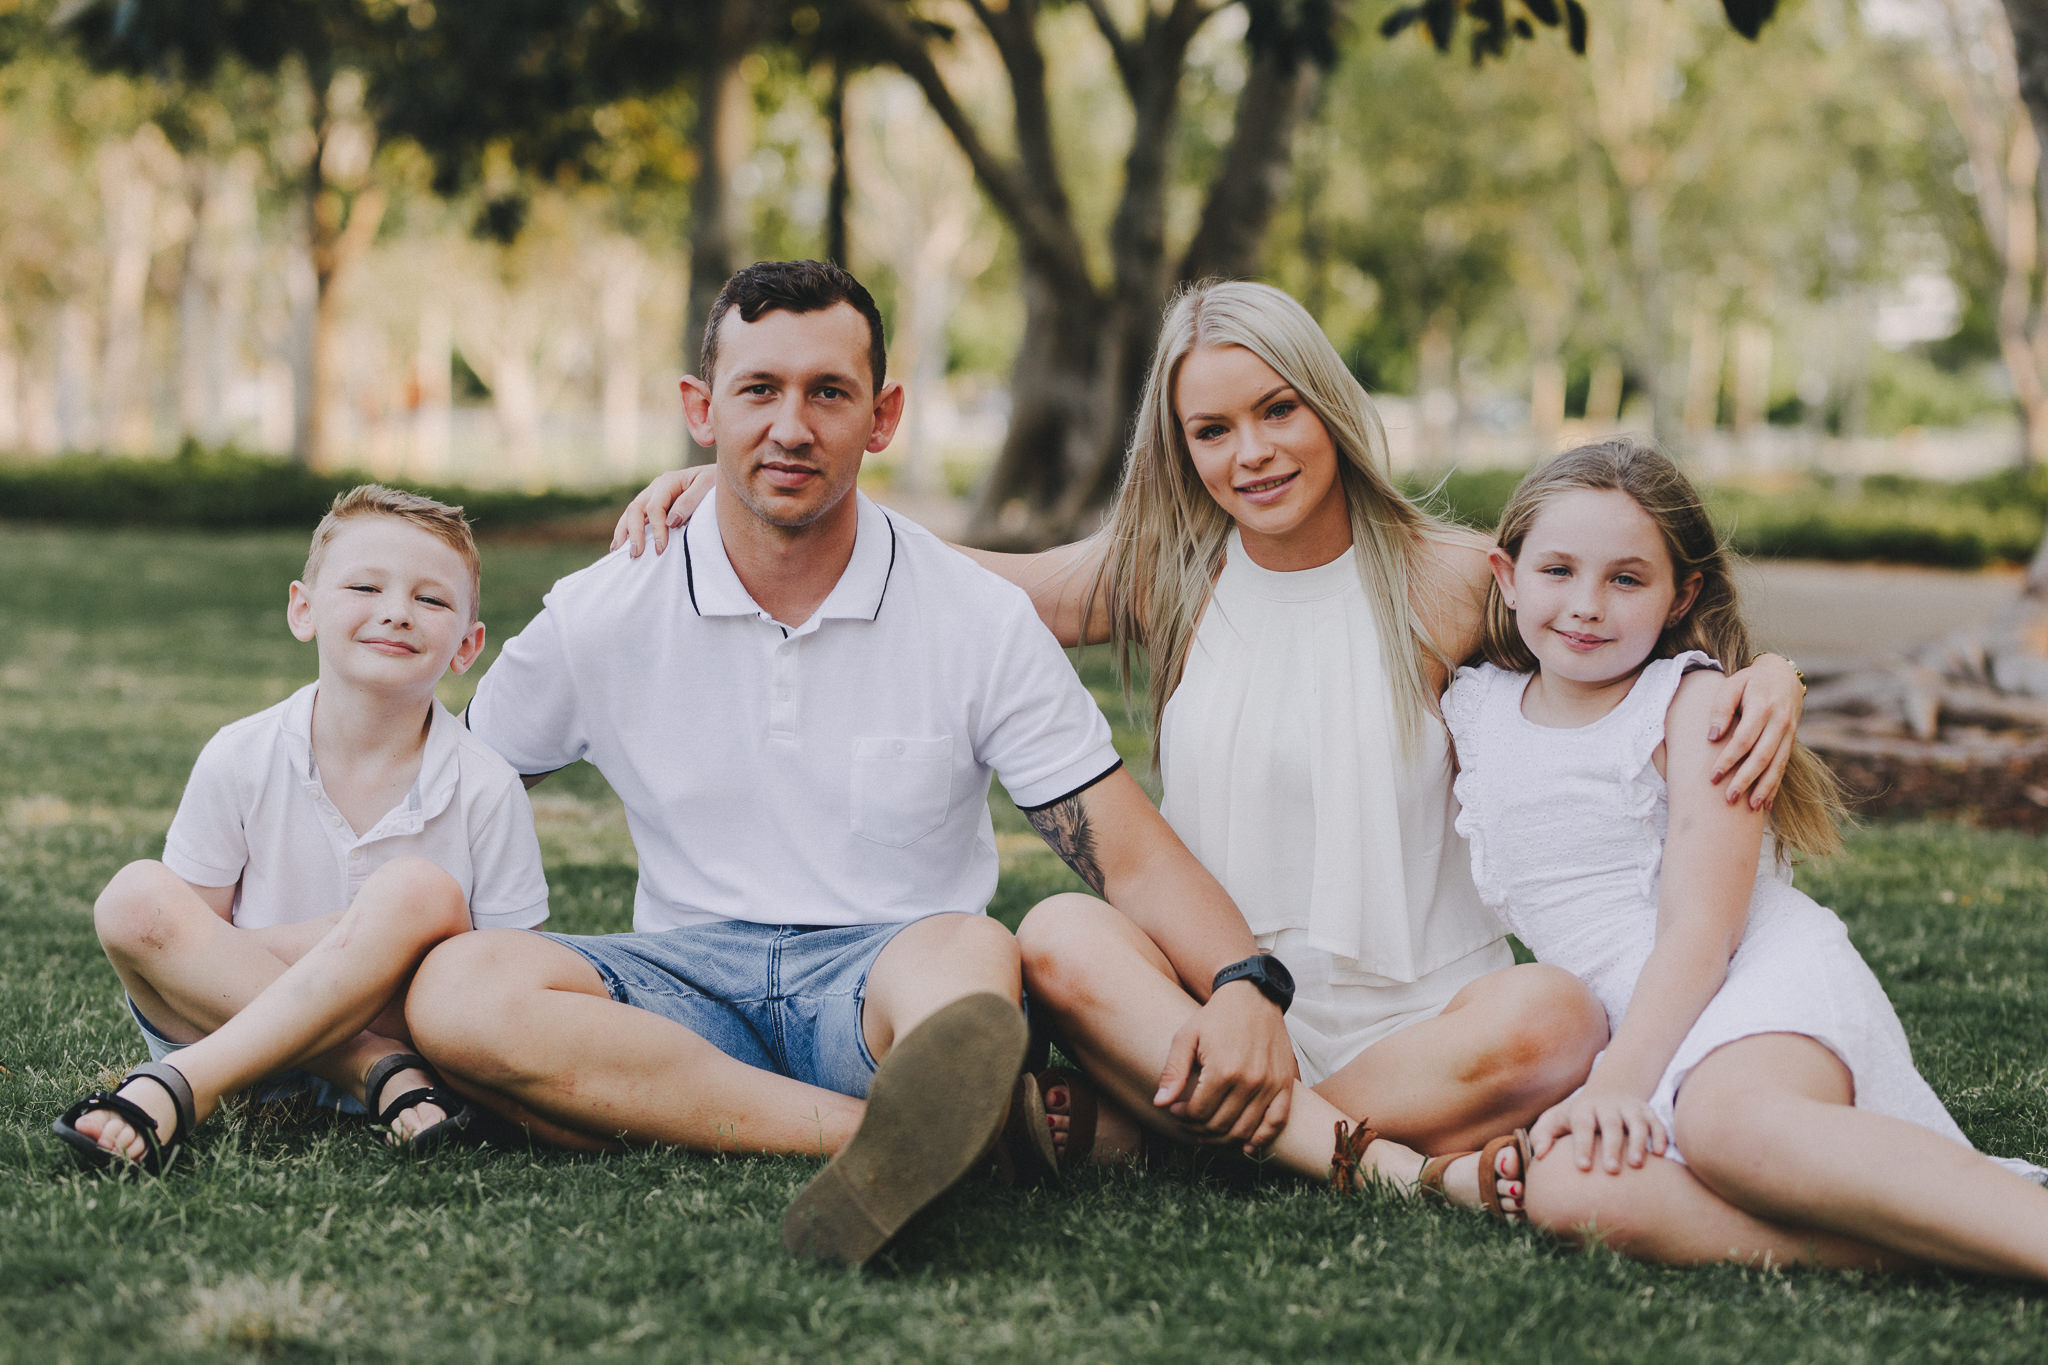 Snape-family-photos-resized-111 - Family Photoshoots Brisbane